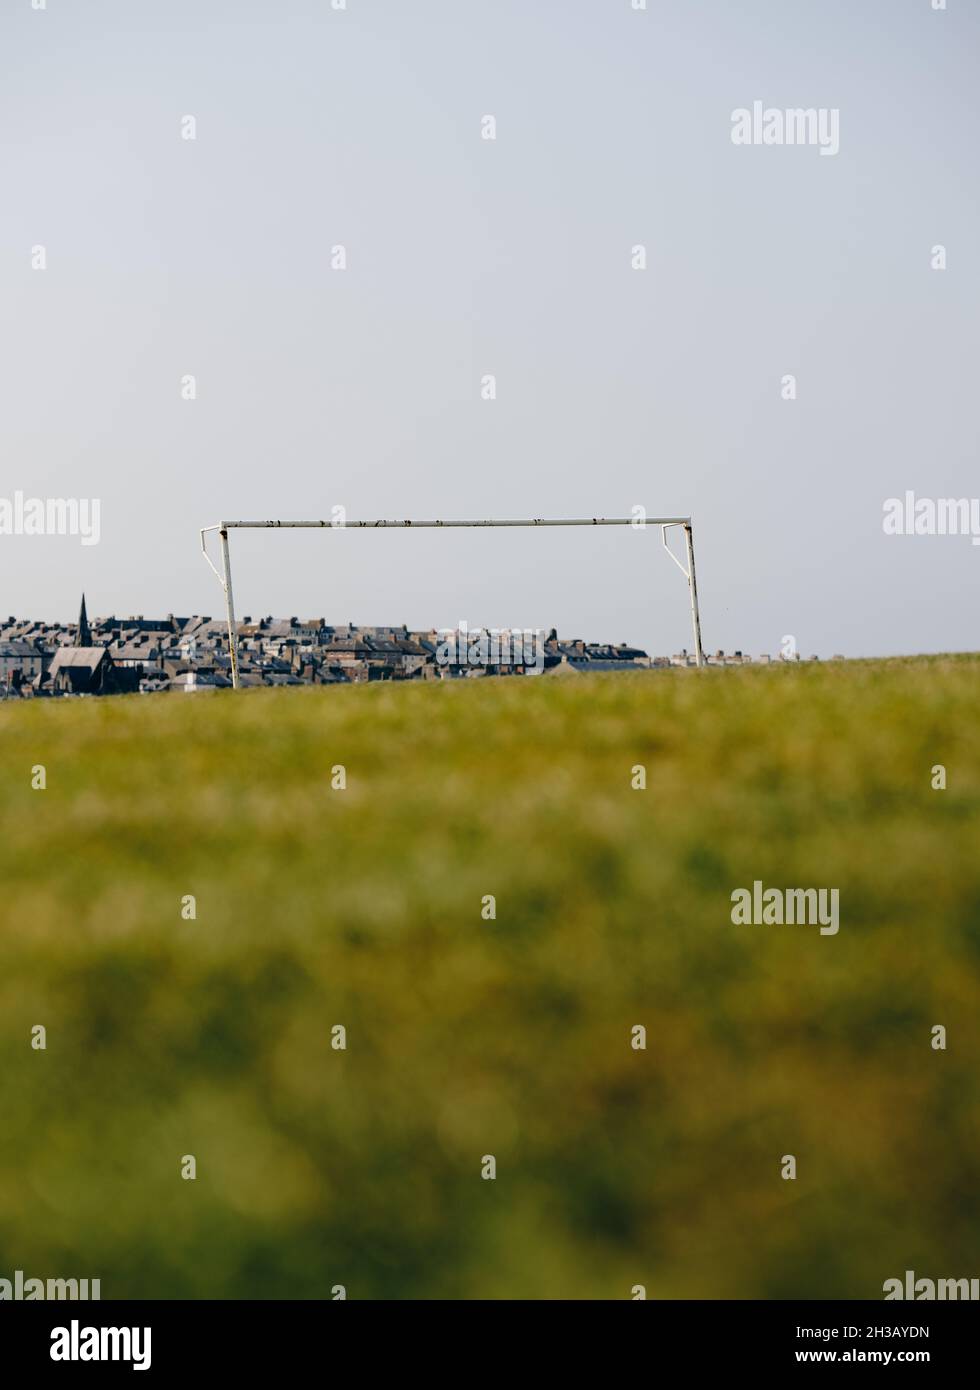 Ein einsames Fußball-/Fußballtor ohne Netz in einem leeren Sommerrasenfeld mit der entfernten Stadt Whitby und Gebäuden dahinter. Stockfoto